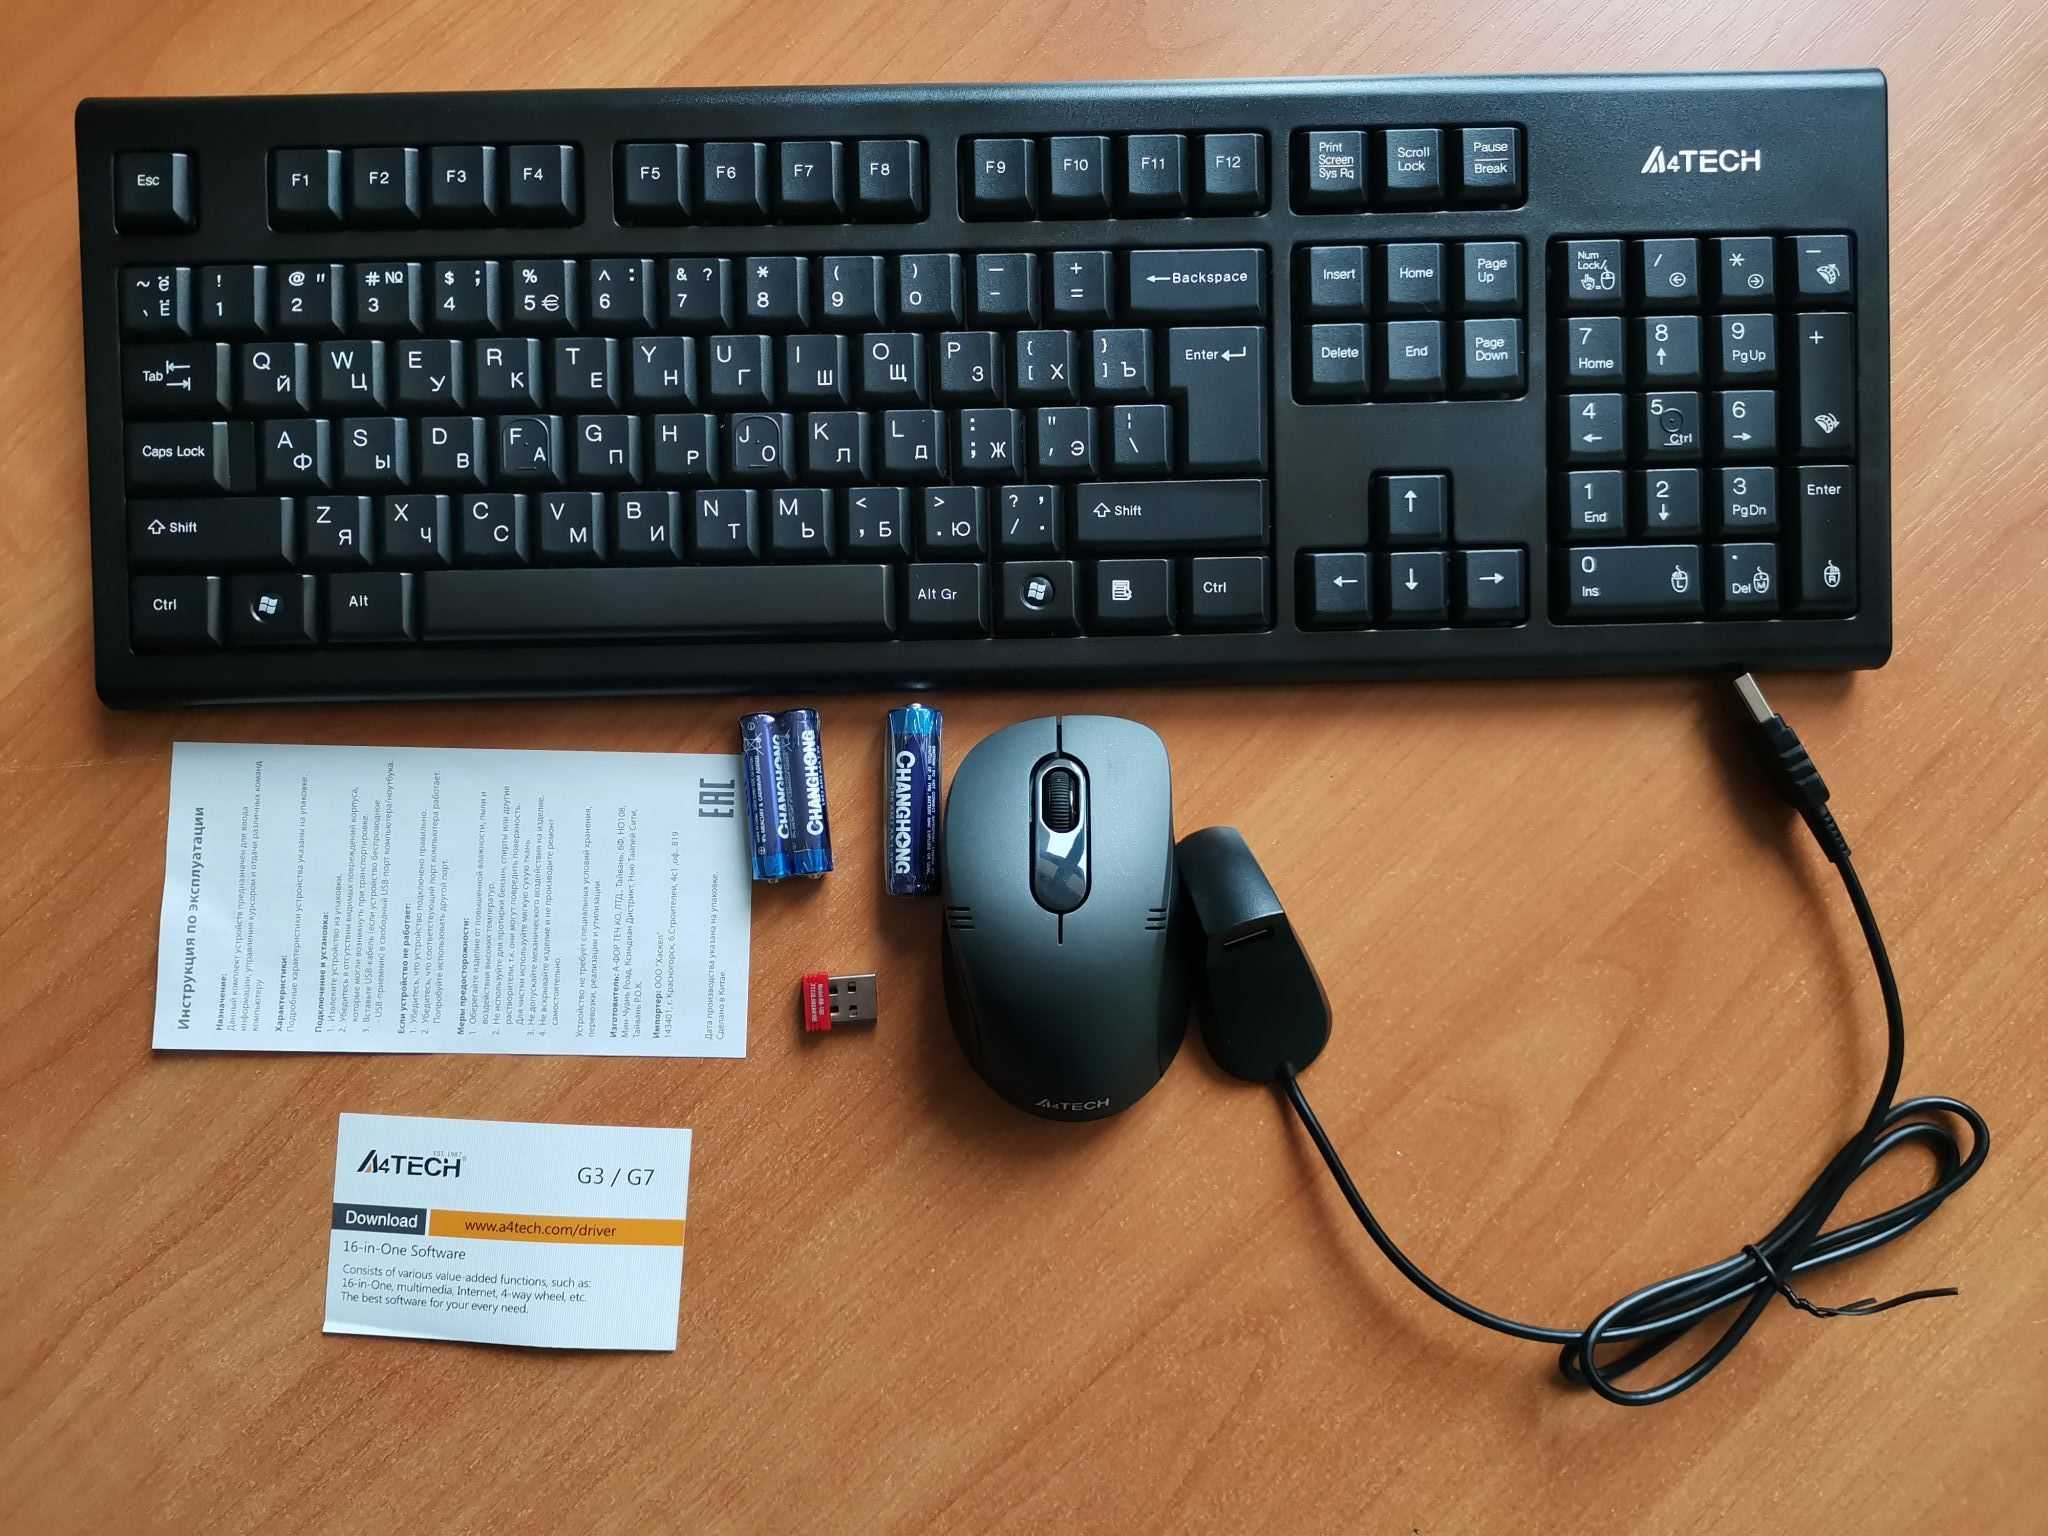 A4tech 7100n black usb (черный) - купить , скидки, цена, отзывы, обзор, характеристики - комплекты клавиатур и мышей